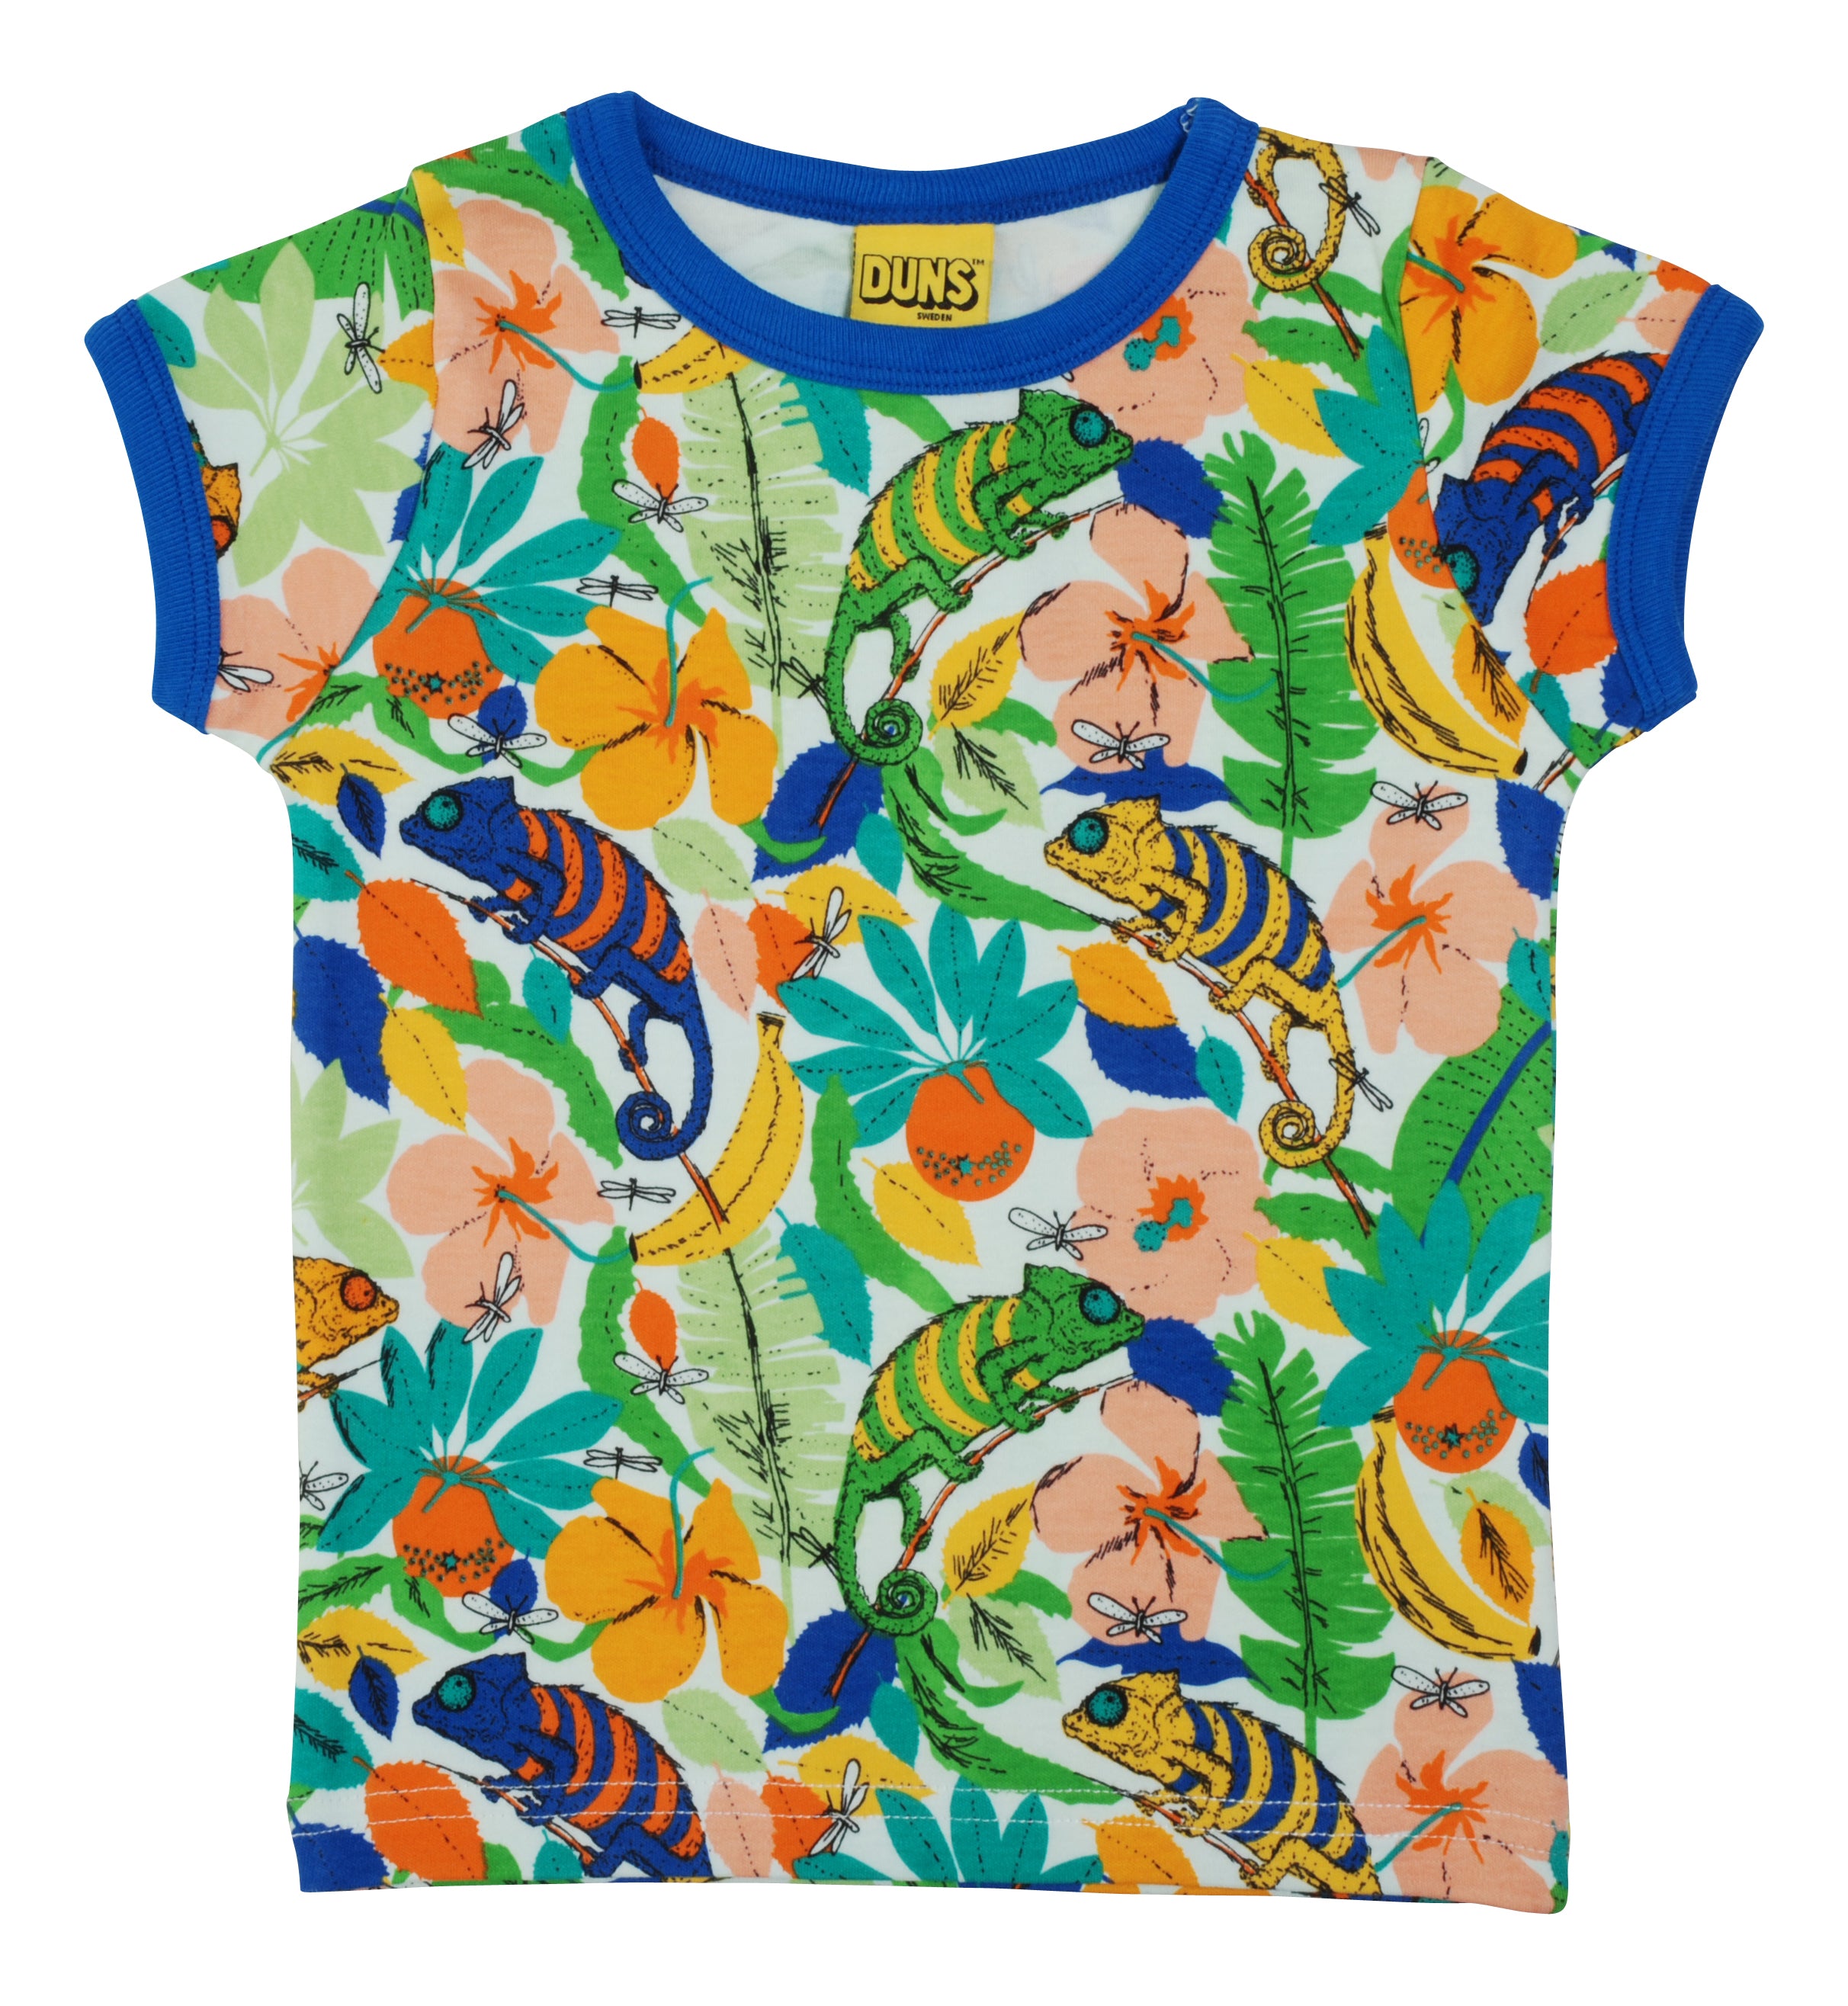 T-shirt / Short Sleeve Top Chameleon - Duns Sweden